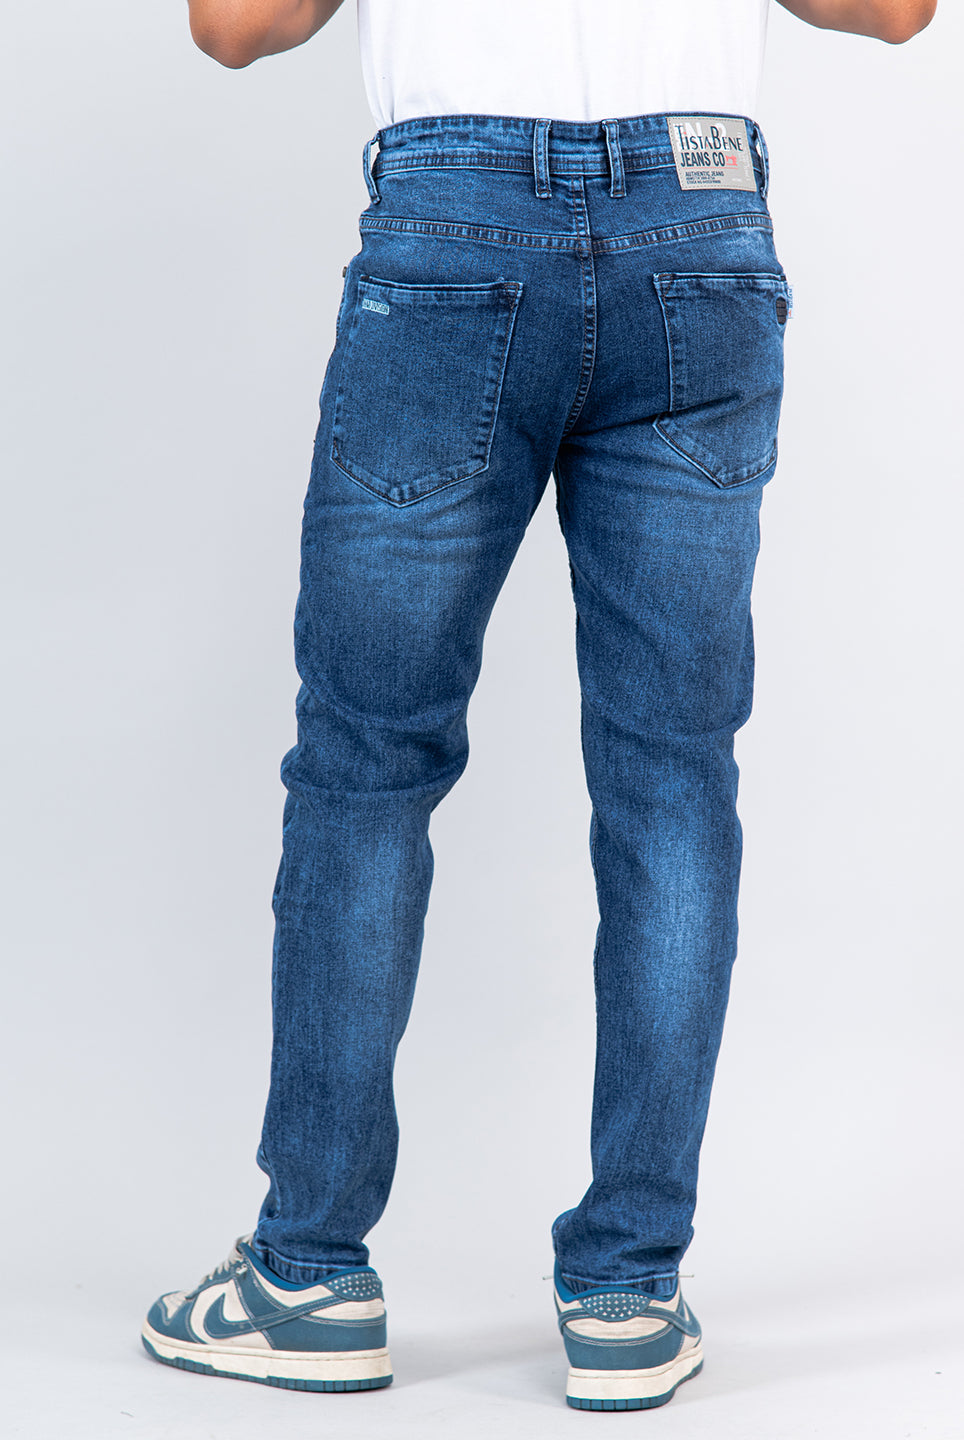 blue jeans for men